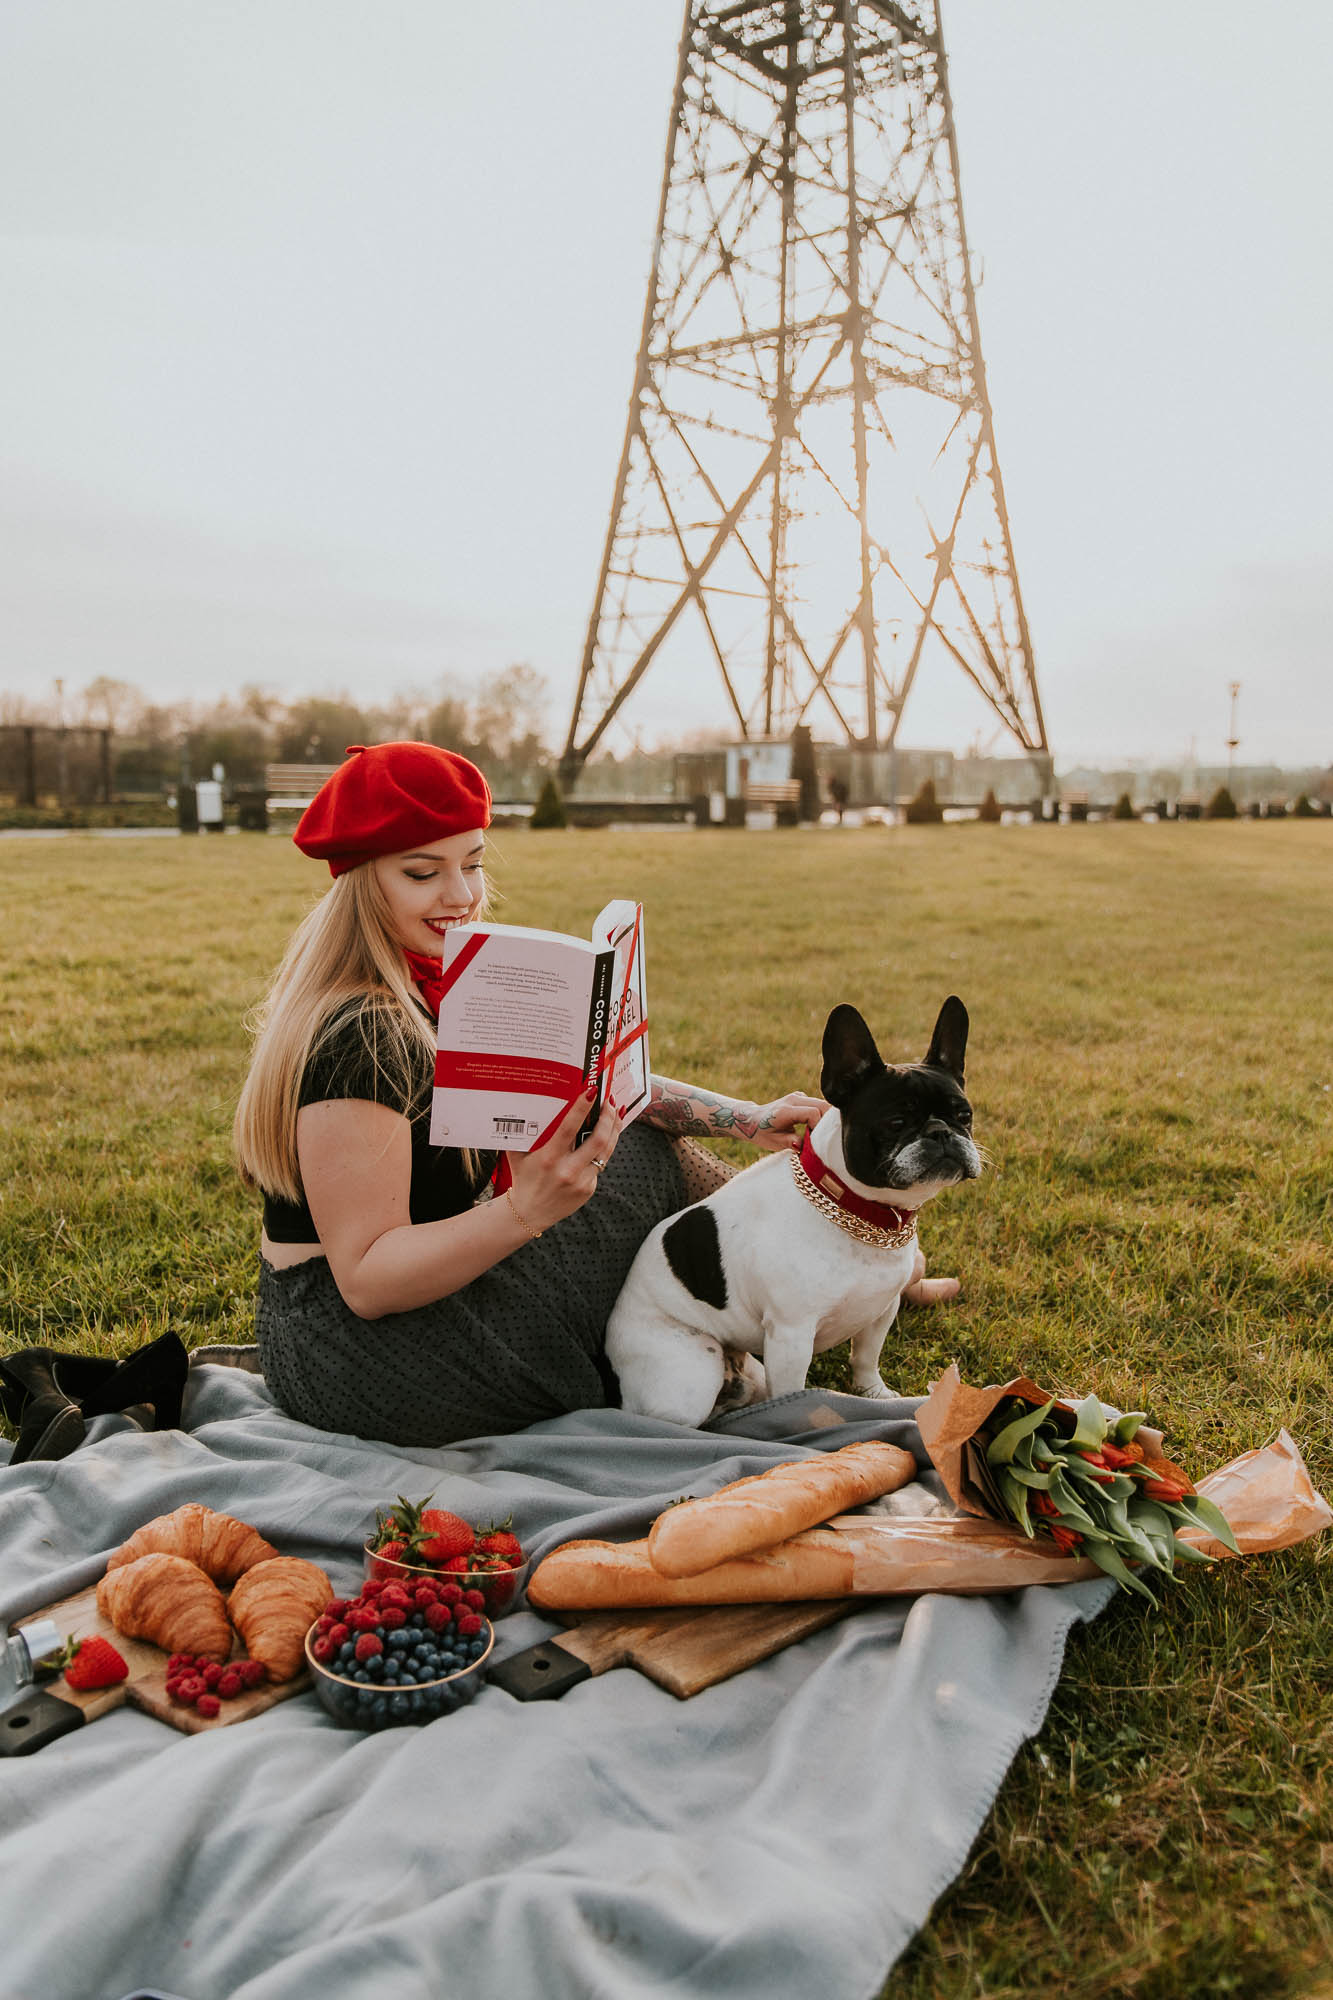 Dziewczyna w czerwonym berecie na kocu czyta książkę, a obok siedzi pies